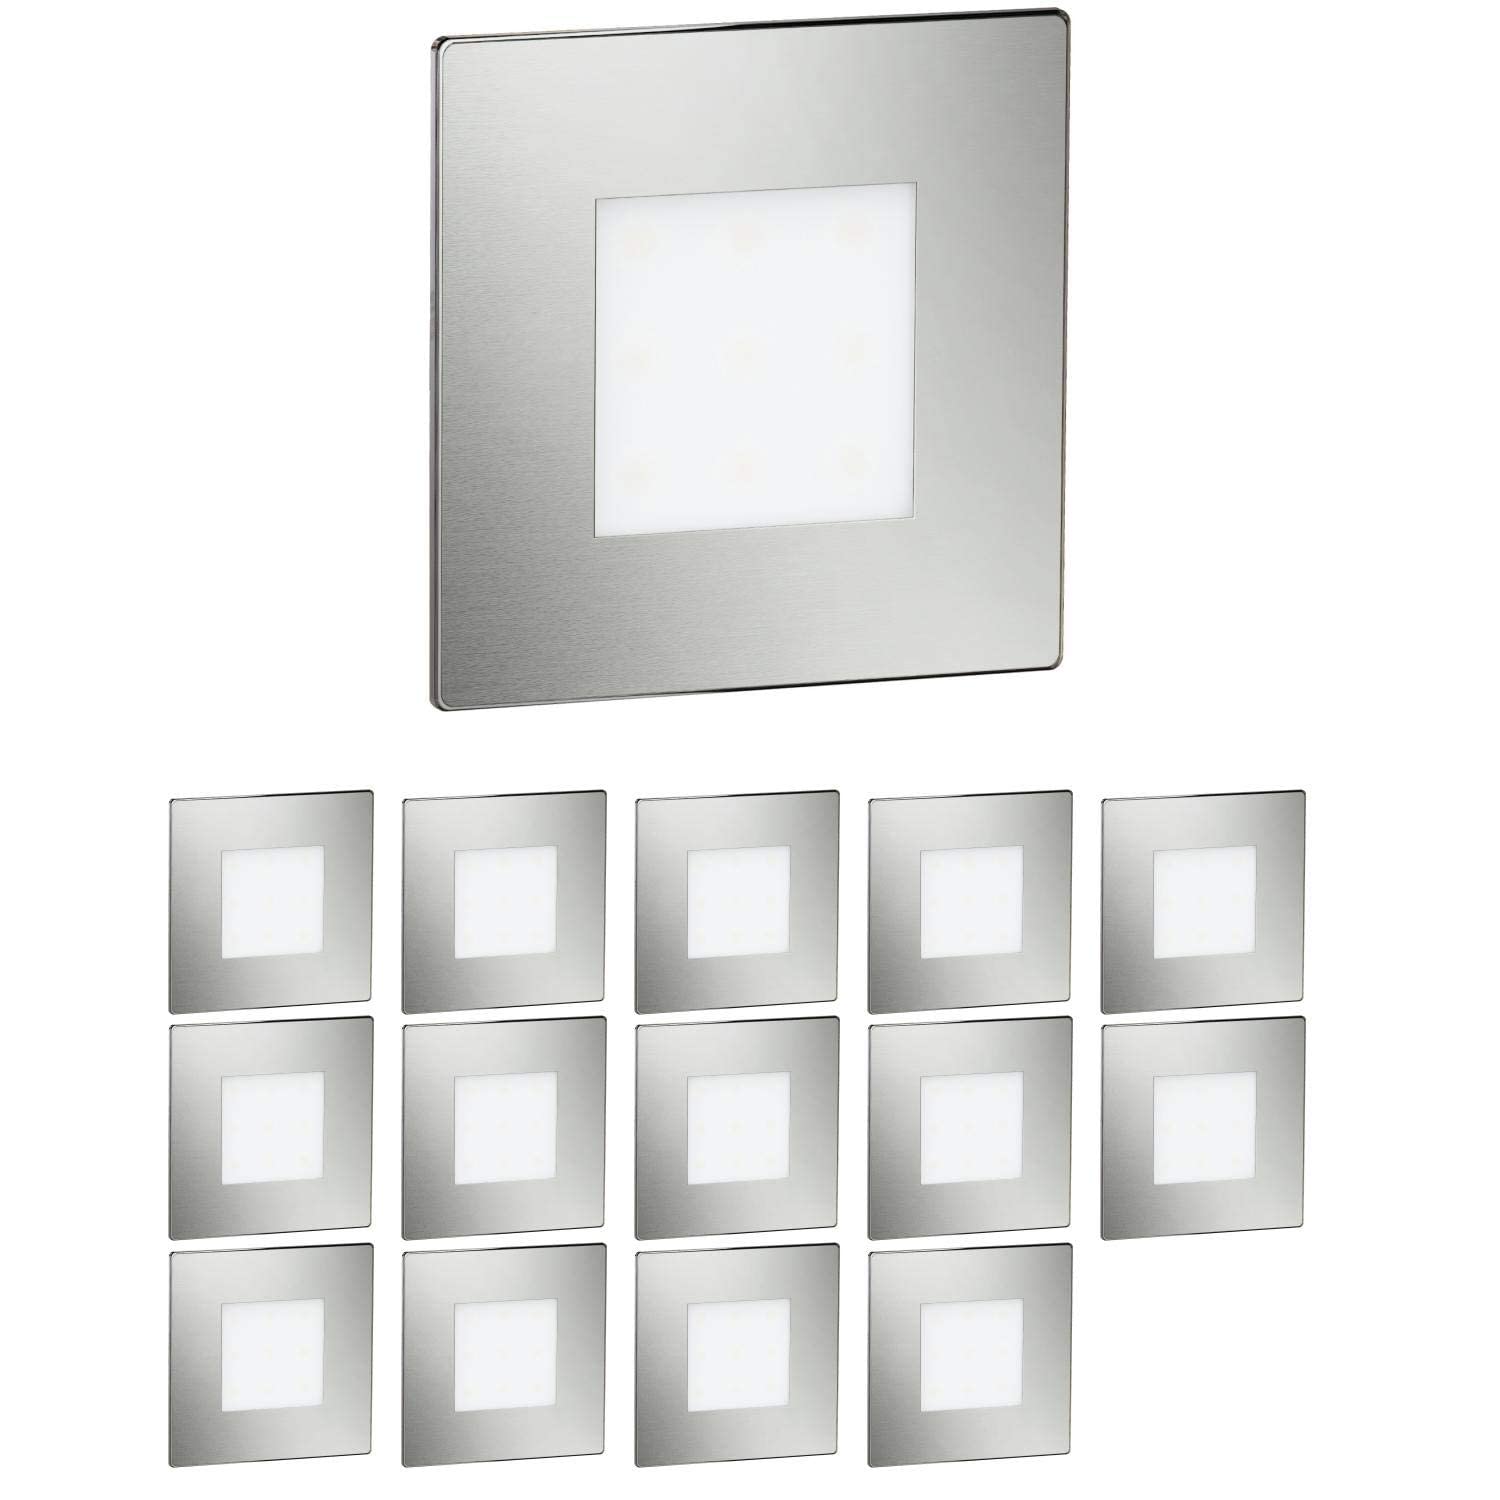 ledscom.de 15 Stück LED Treppenlicht/Wandeinbauleuchte FEX für innen und außen, eckig, edelstahl, 85 x 85mm, warmweiß